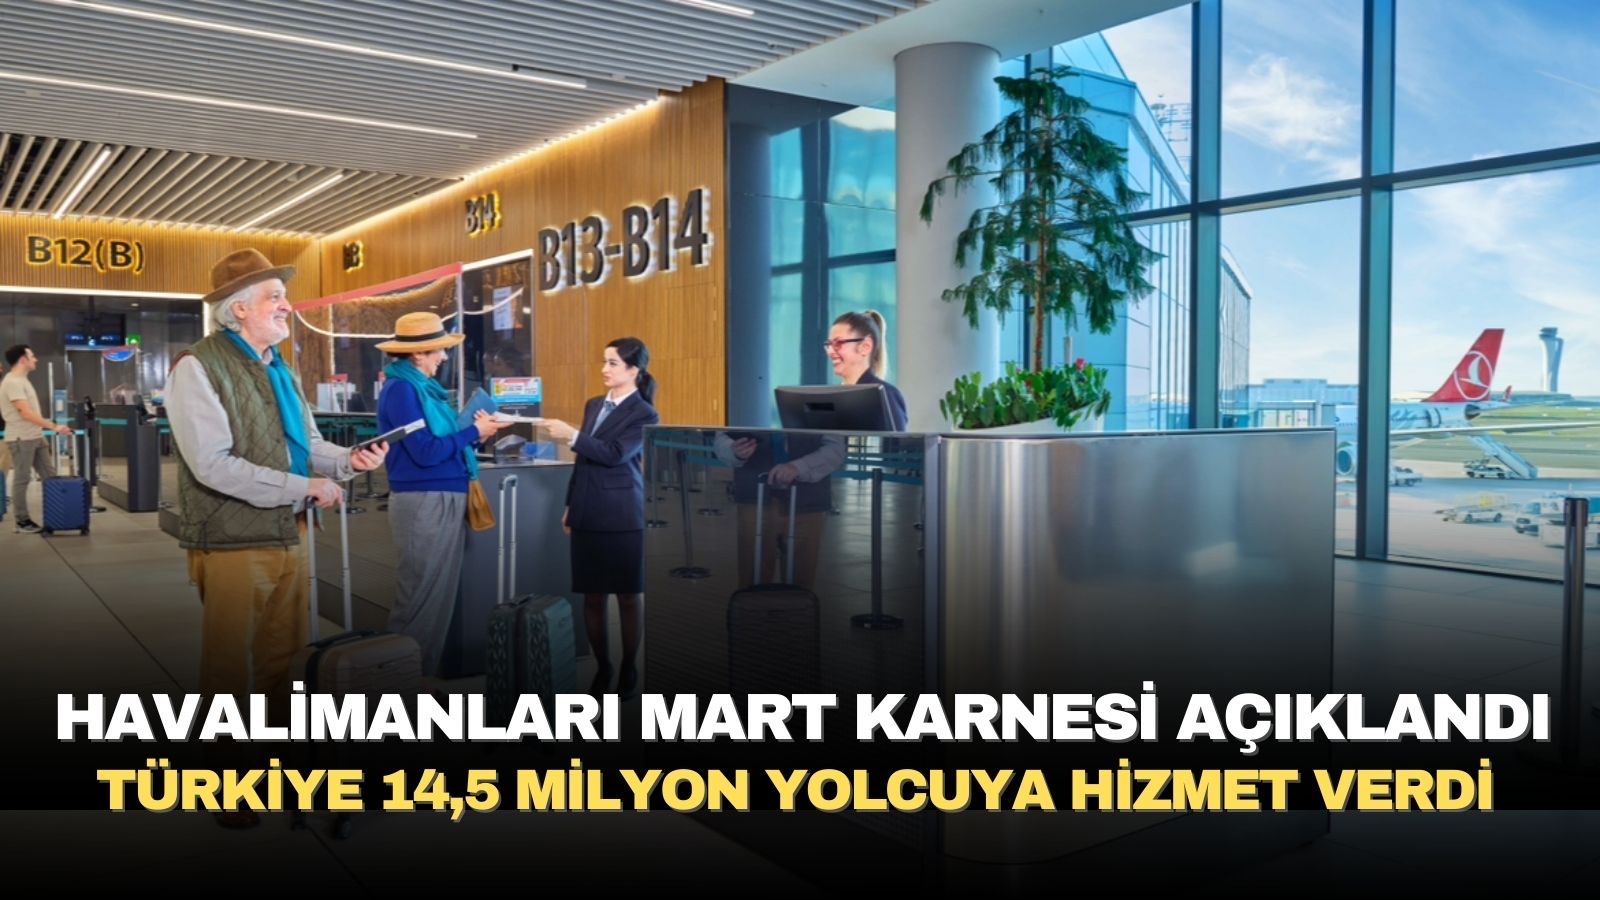 turkiye-145-milyon-yolcuya-hizmet-verdi